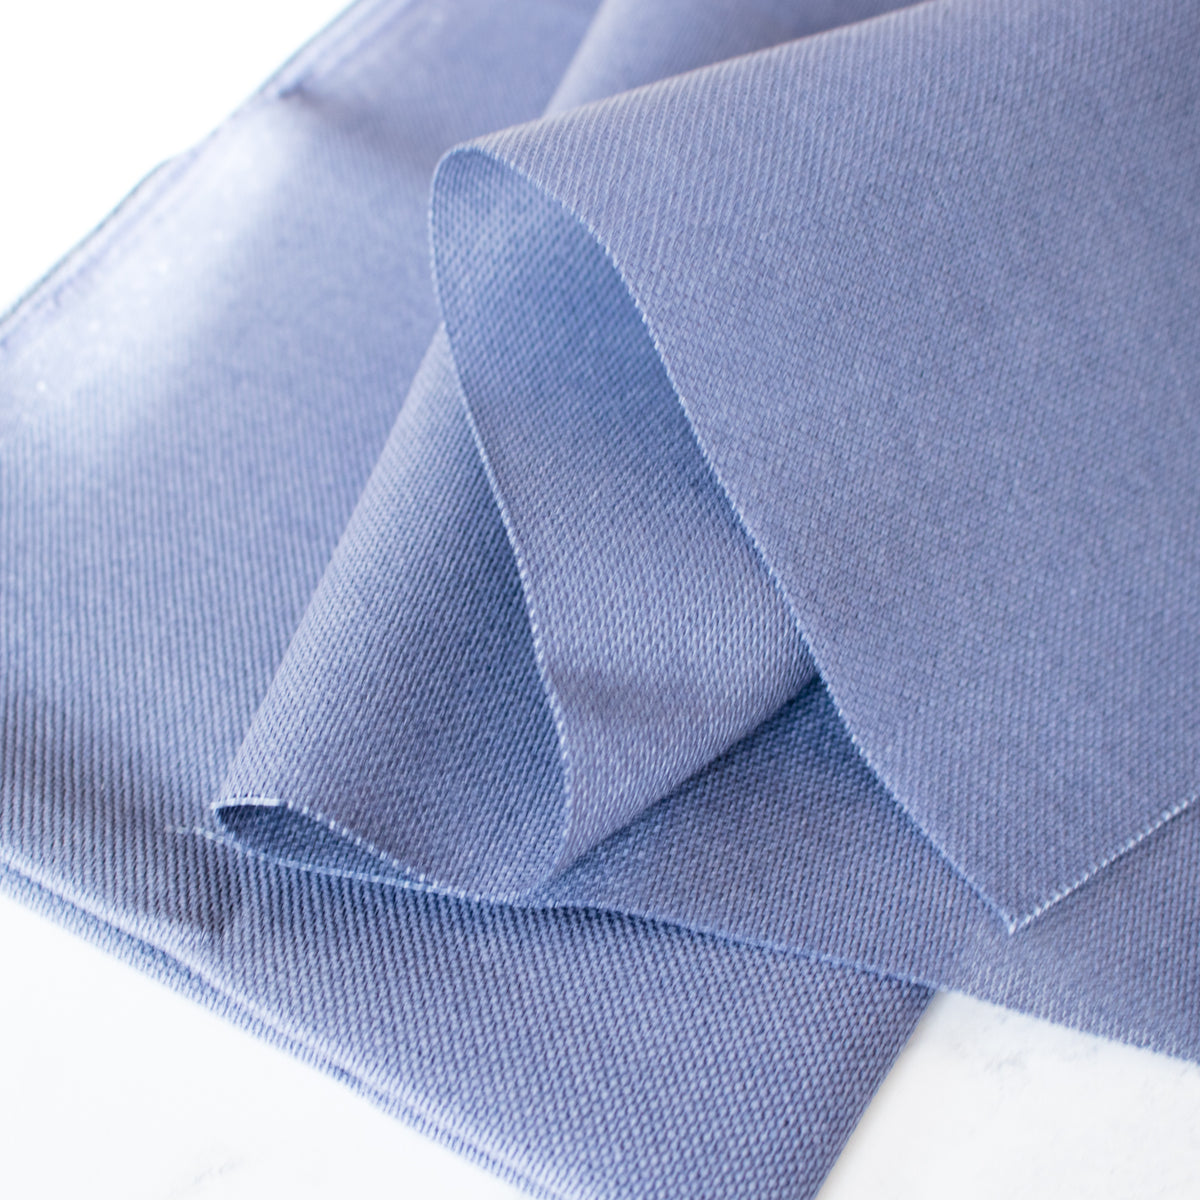 Denim Blue Evenweave Cross Stitch Fabric - 28 count